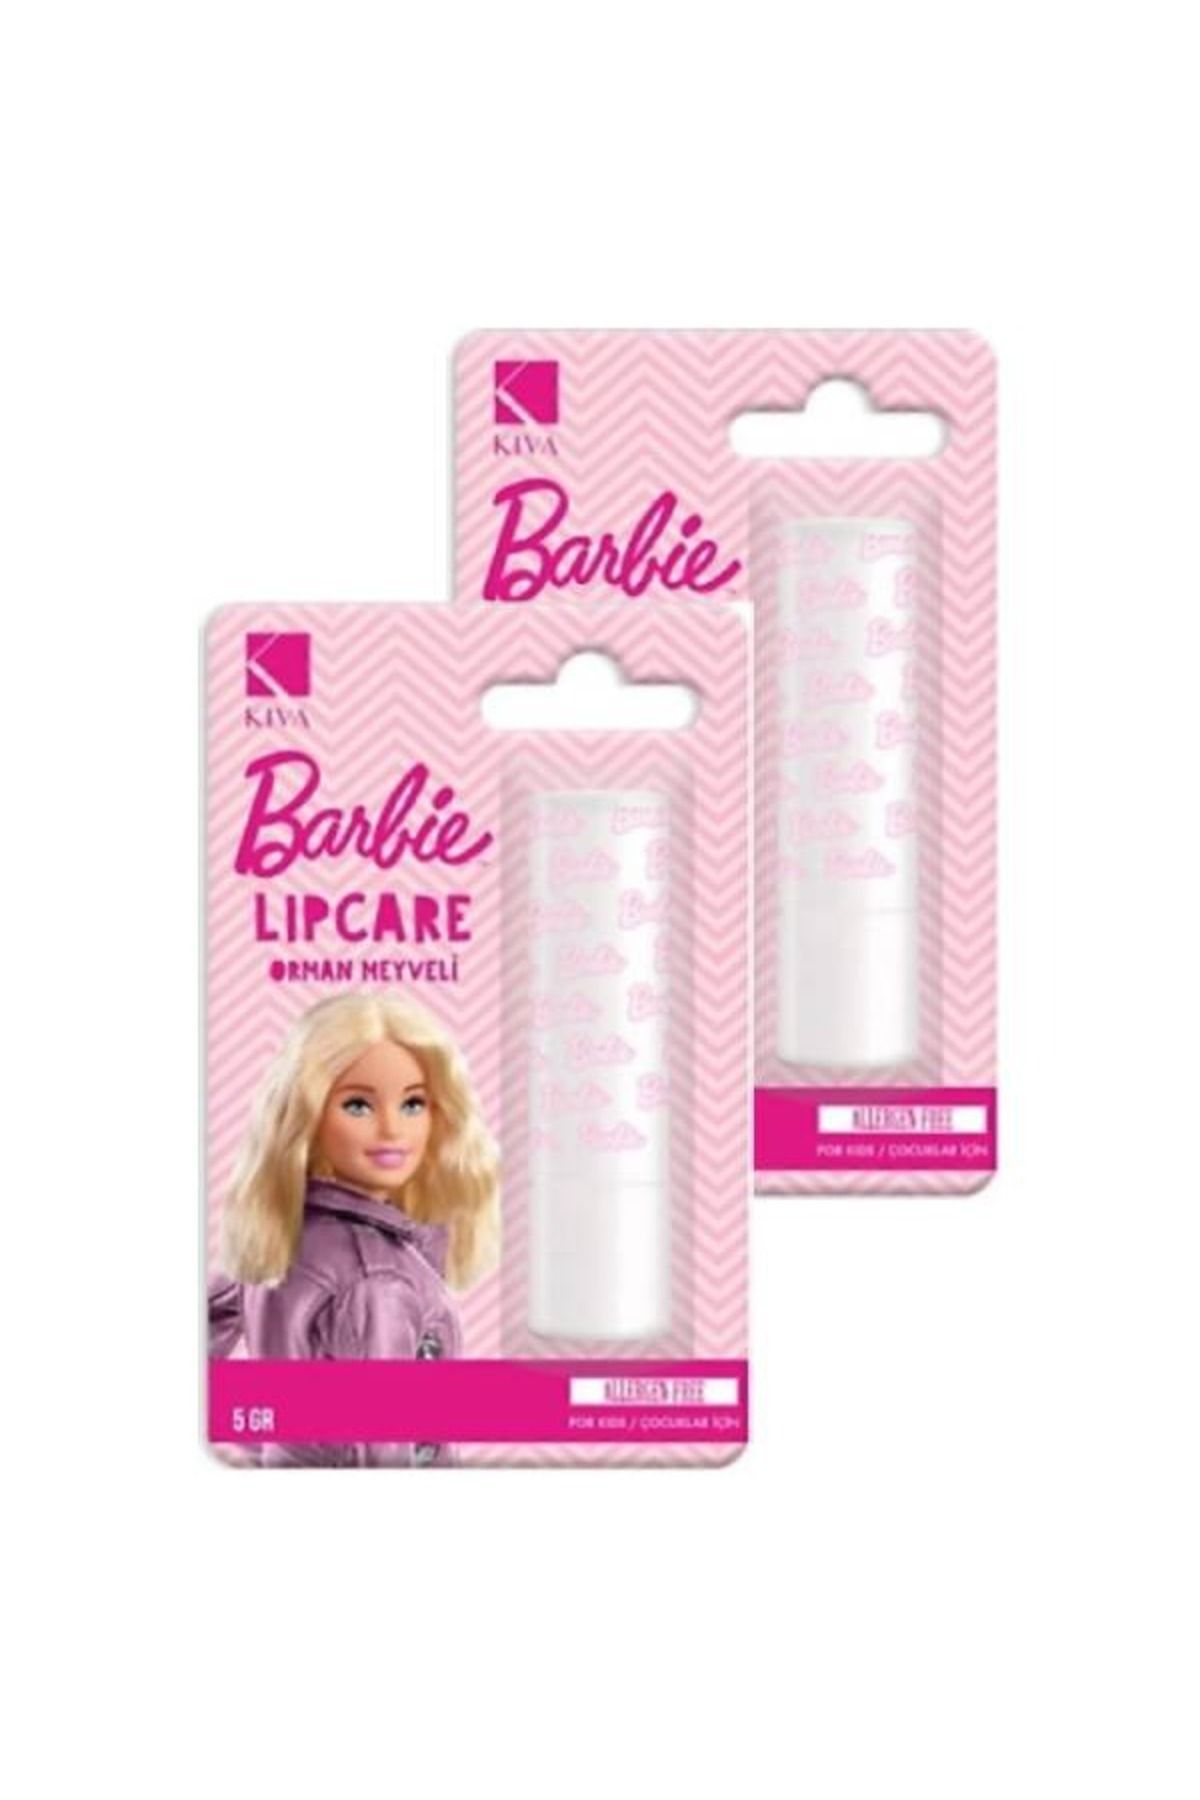 Barbie Lipcare Dudak Koruyucu Kremi Orman Meyveli 5gr (2 Adet)